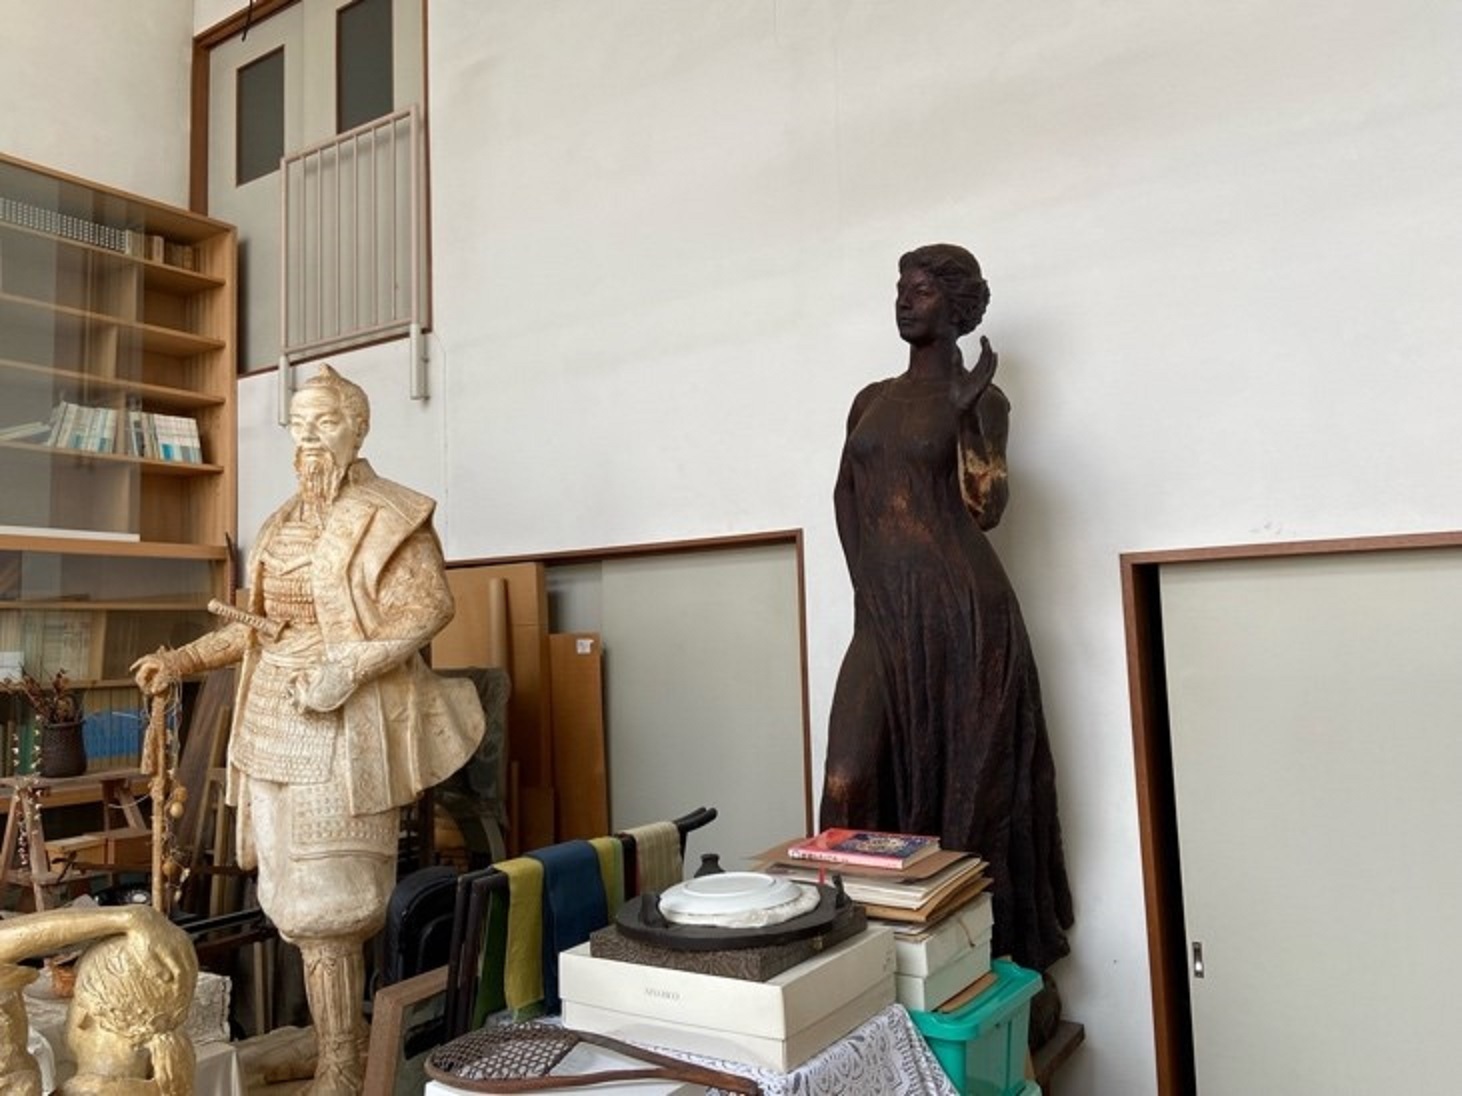 右の女性像は茶色がかっていますが、焦げているんだそう。ブロンズ像の製作過程で銅を型に流し込む際に、製作当時の技術的に焦げてしまっていたとのこと